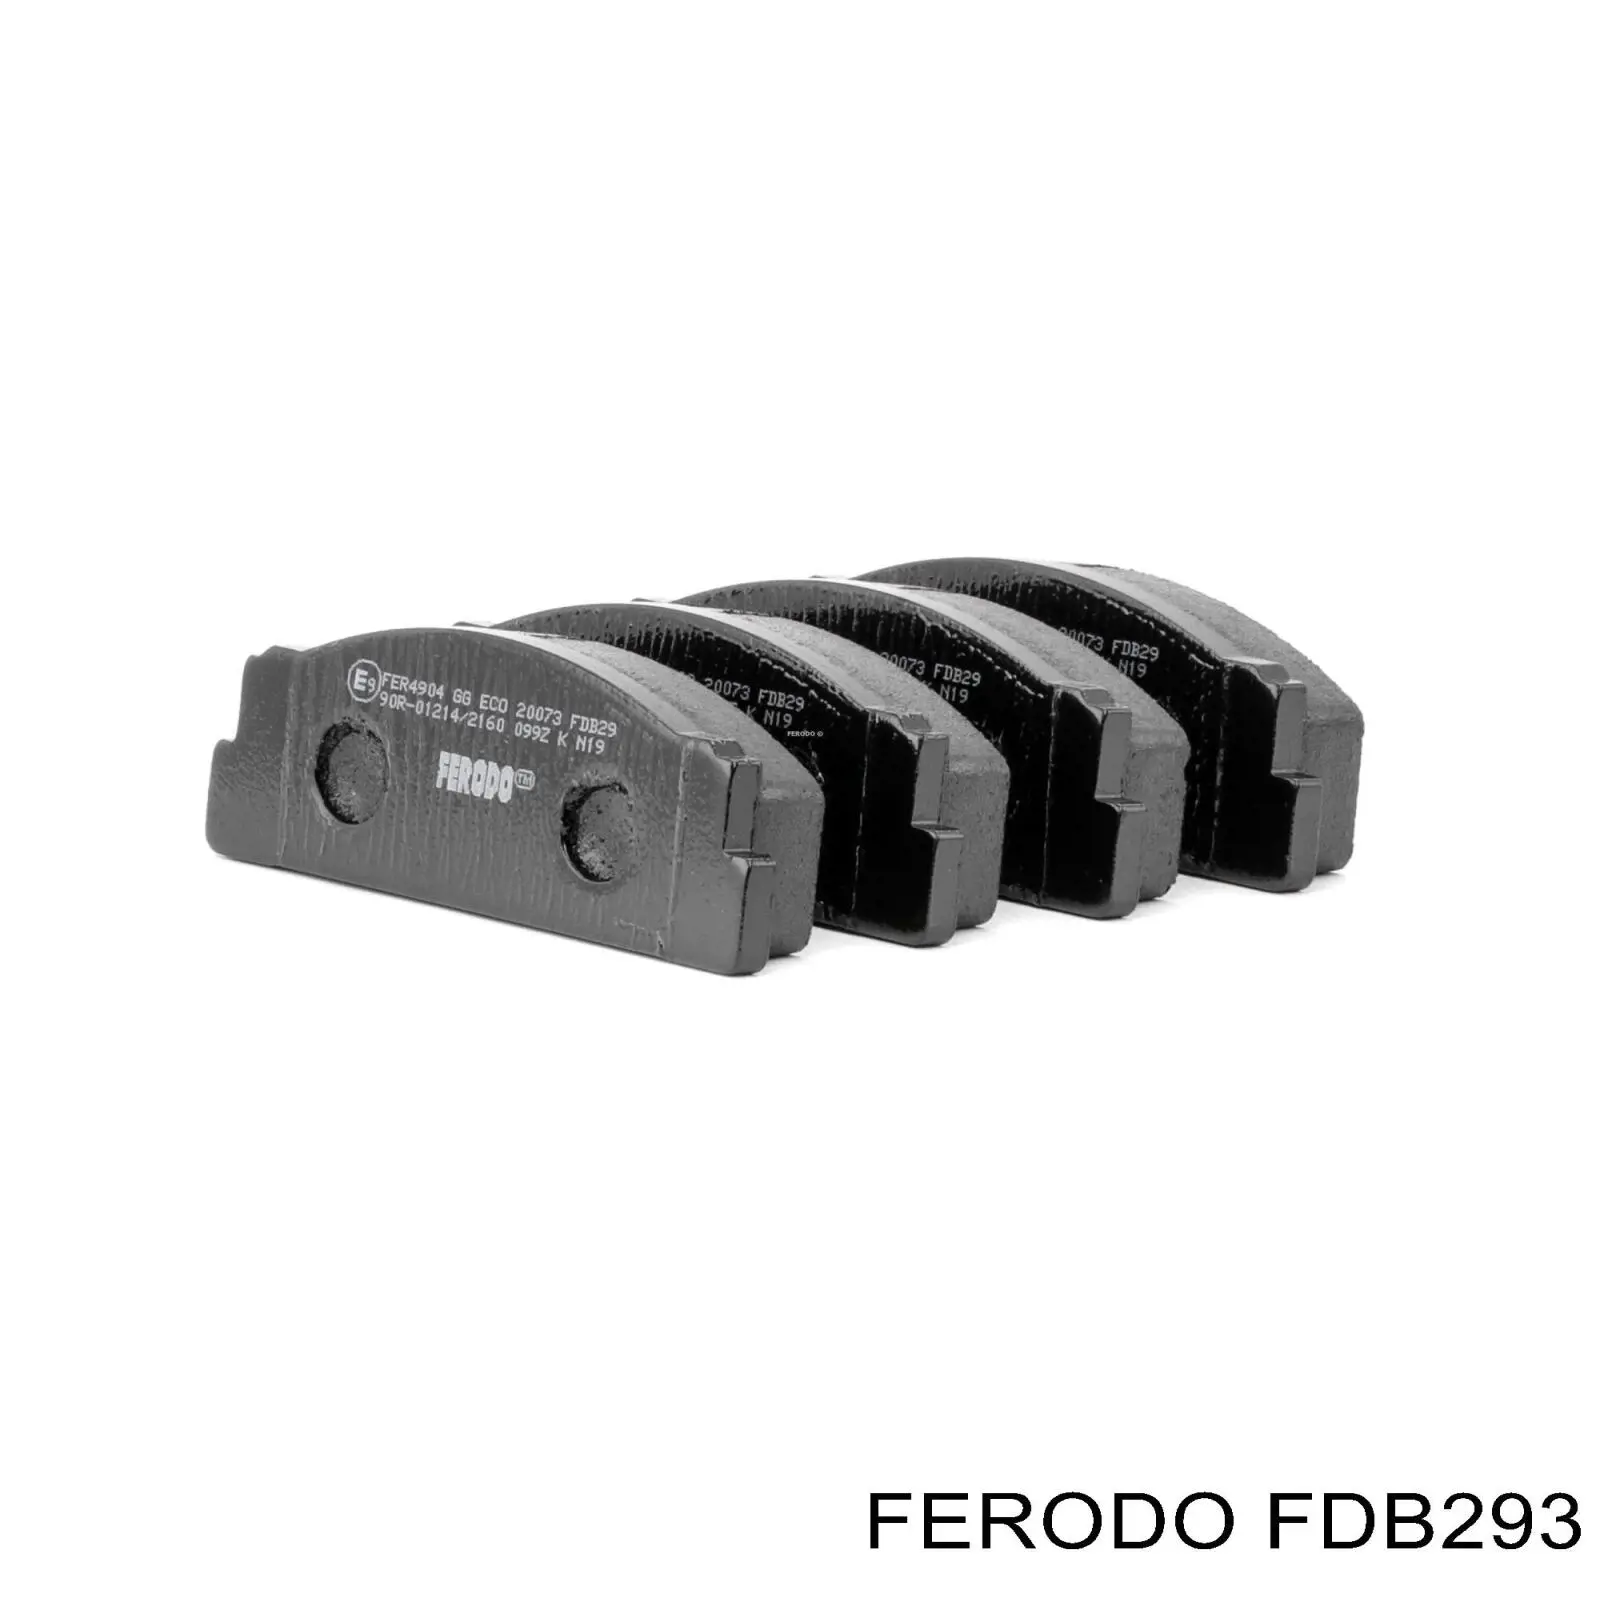 FDB293 Ferodo колодки тормозные передние дисковые